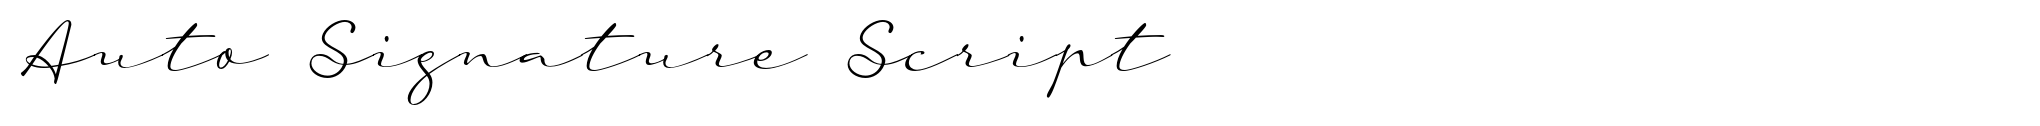 Auto Signature Script image